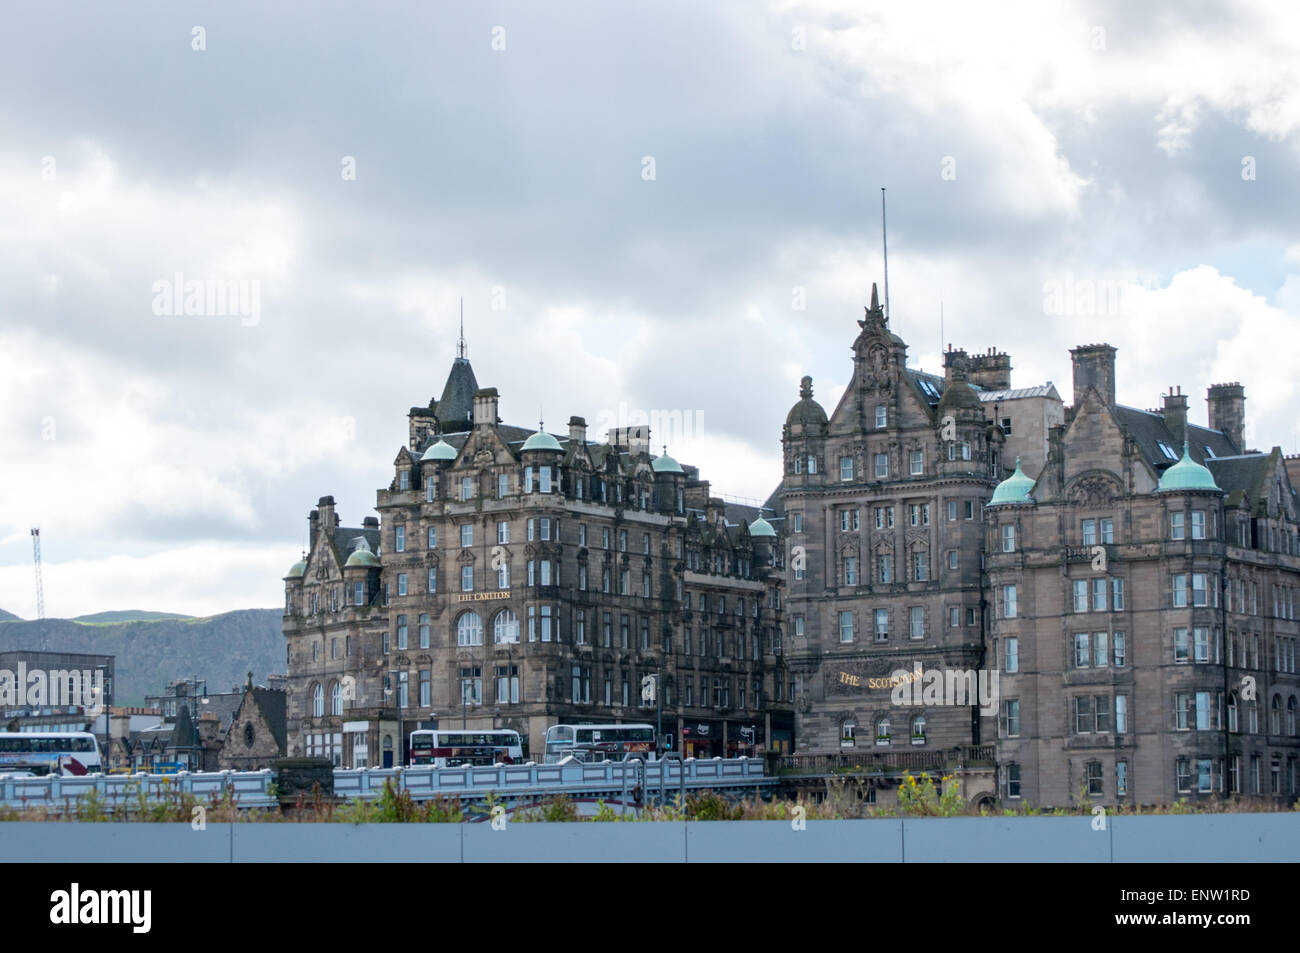 Vue de l'Hôtel Carlton et le vieil Écossais en haut du pont du Nord - Édimbourg, Écosse Banque D'Images